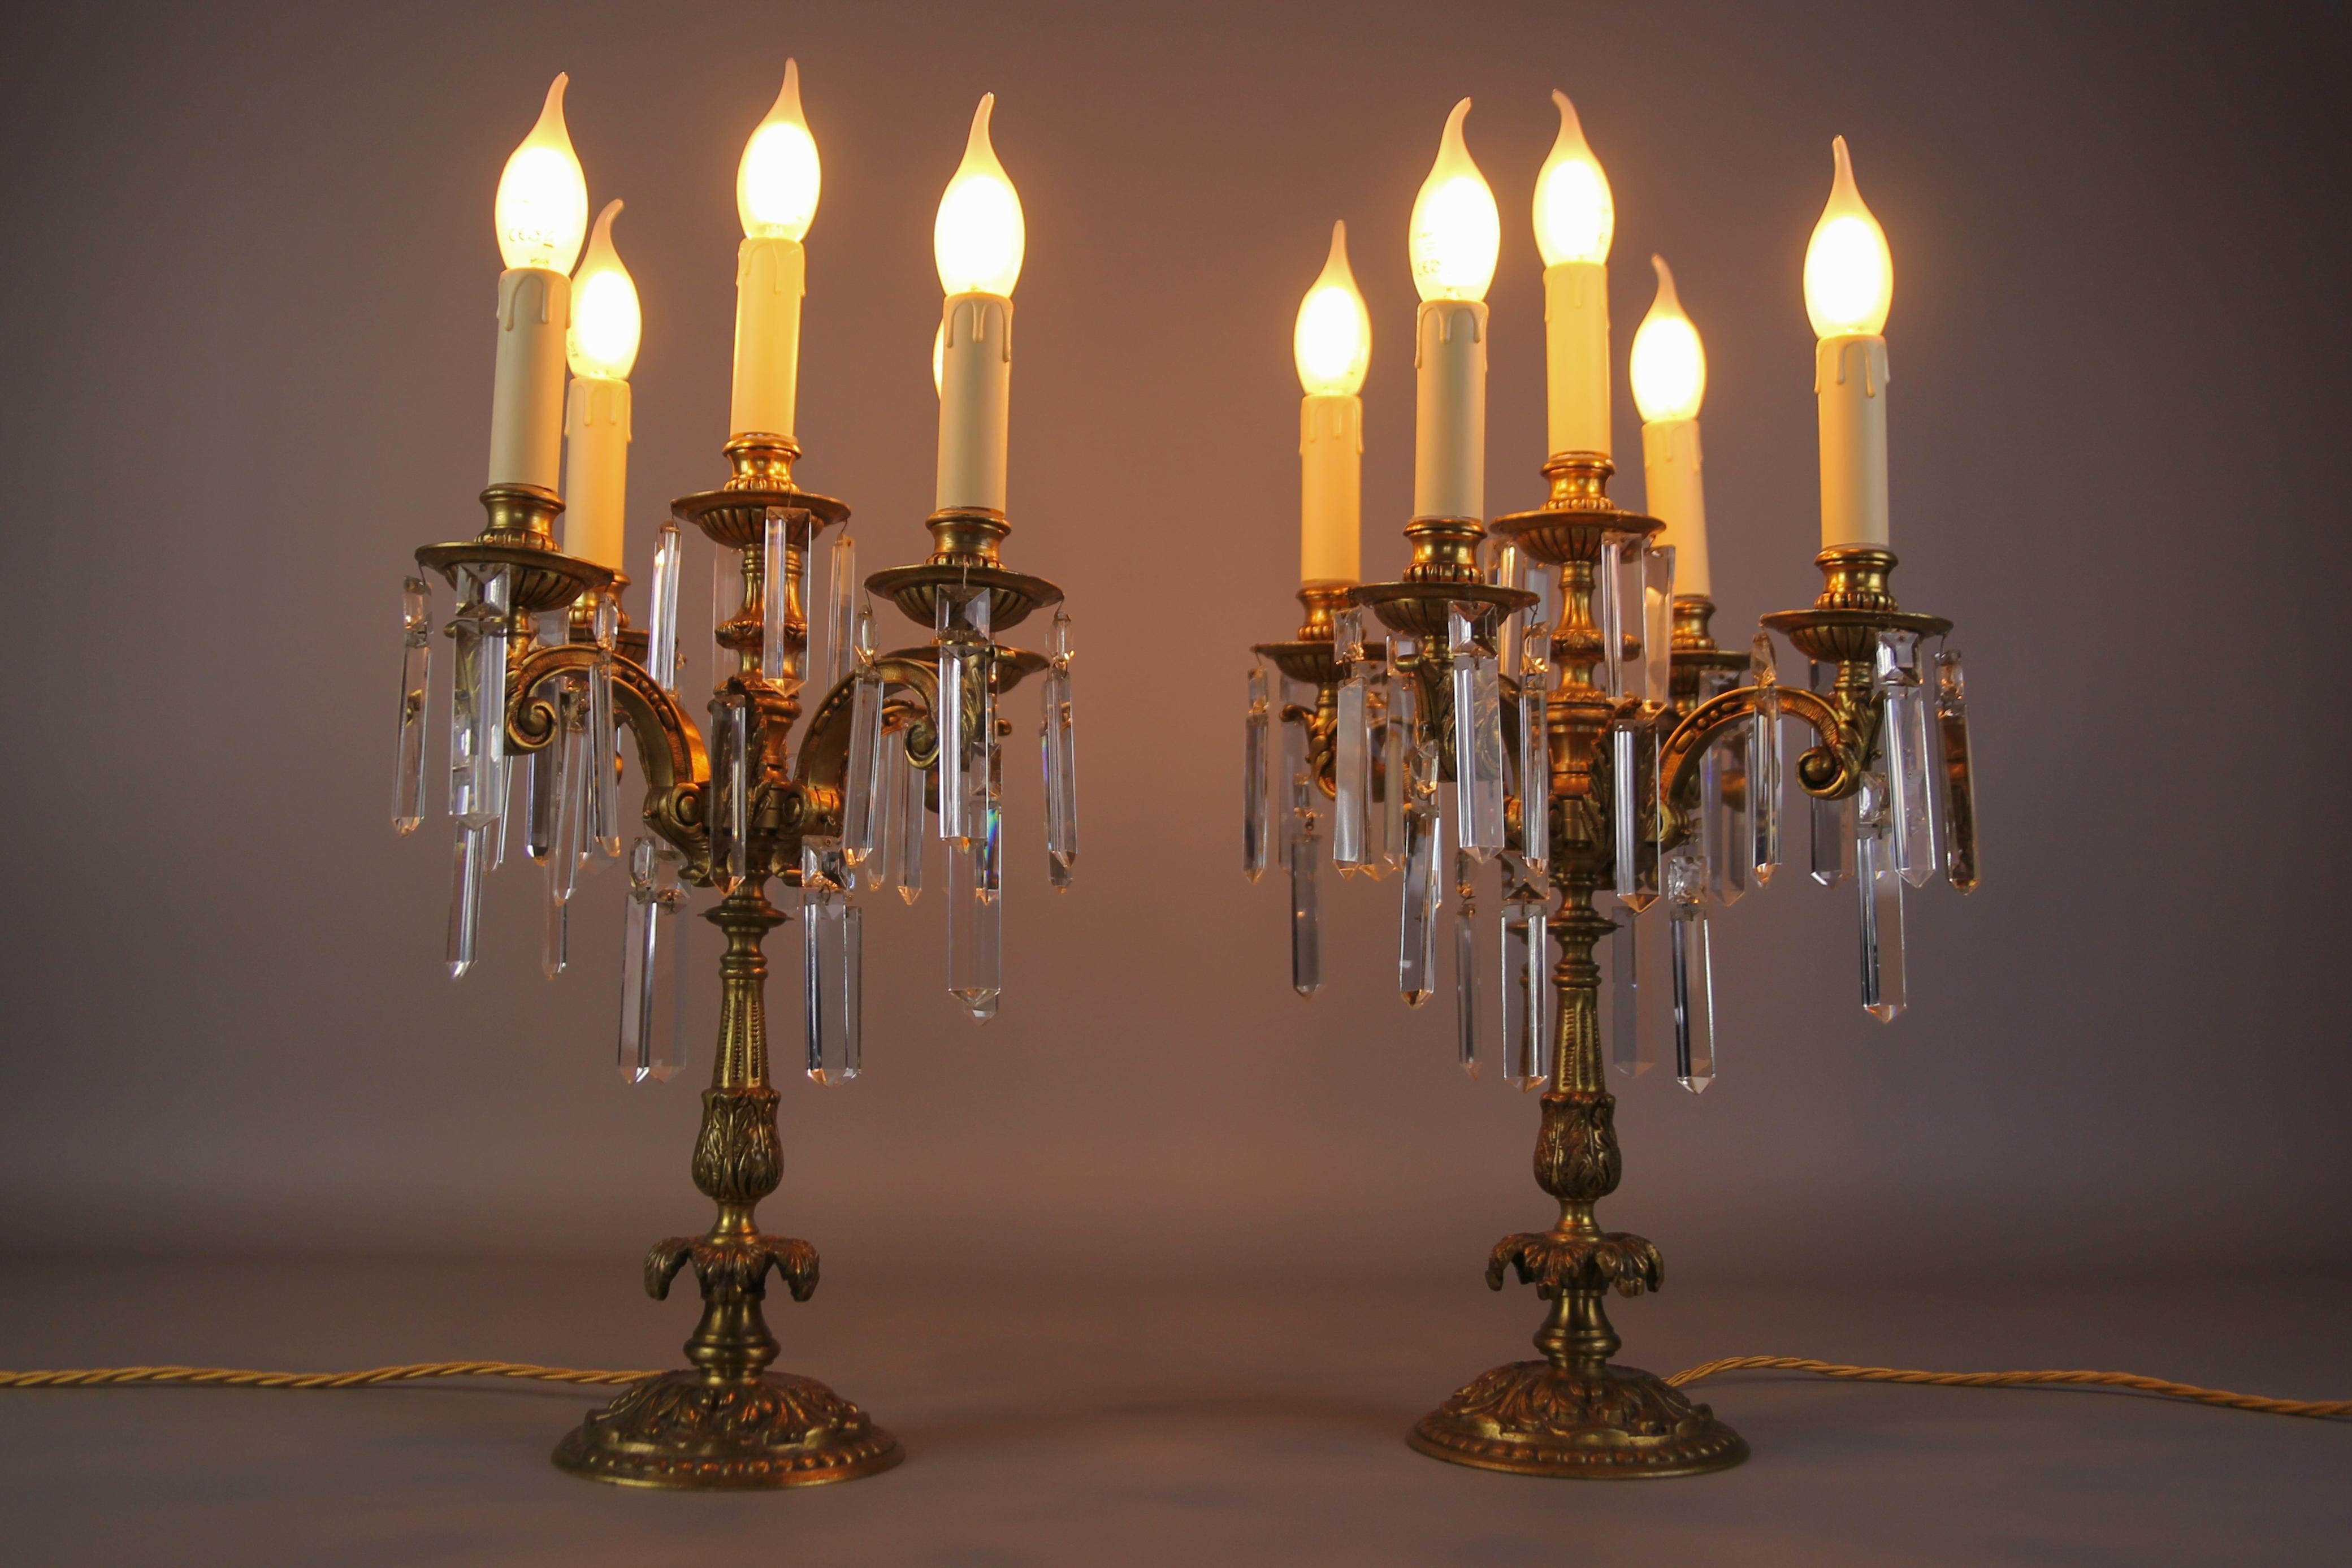 Paire de lampes candélabres en bronze et cristal de style Louis XVI. Ces lampes de table impressionnantes présentent cinq bras en bronze, agrémentés de prismes en cristal taillé suspendus qui reflètent la lumière de l'élégance et de la beauté